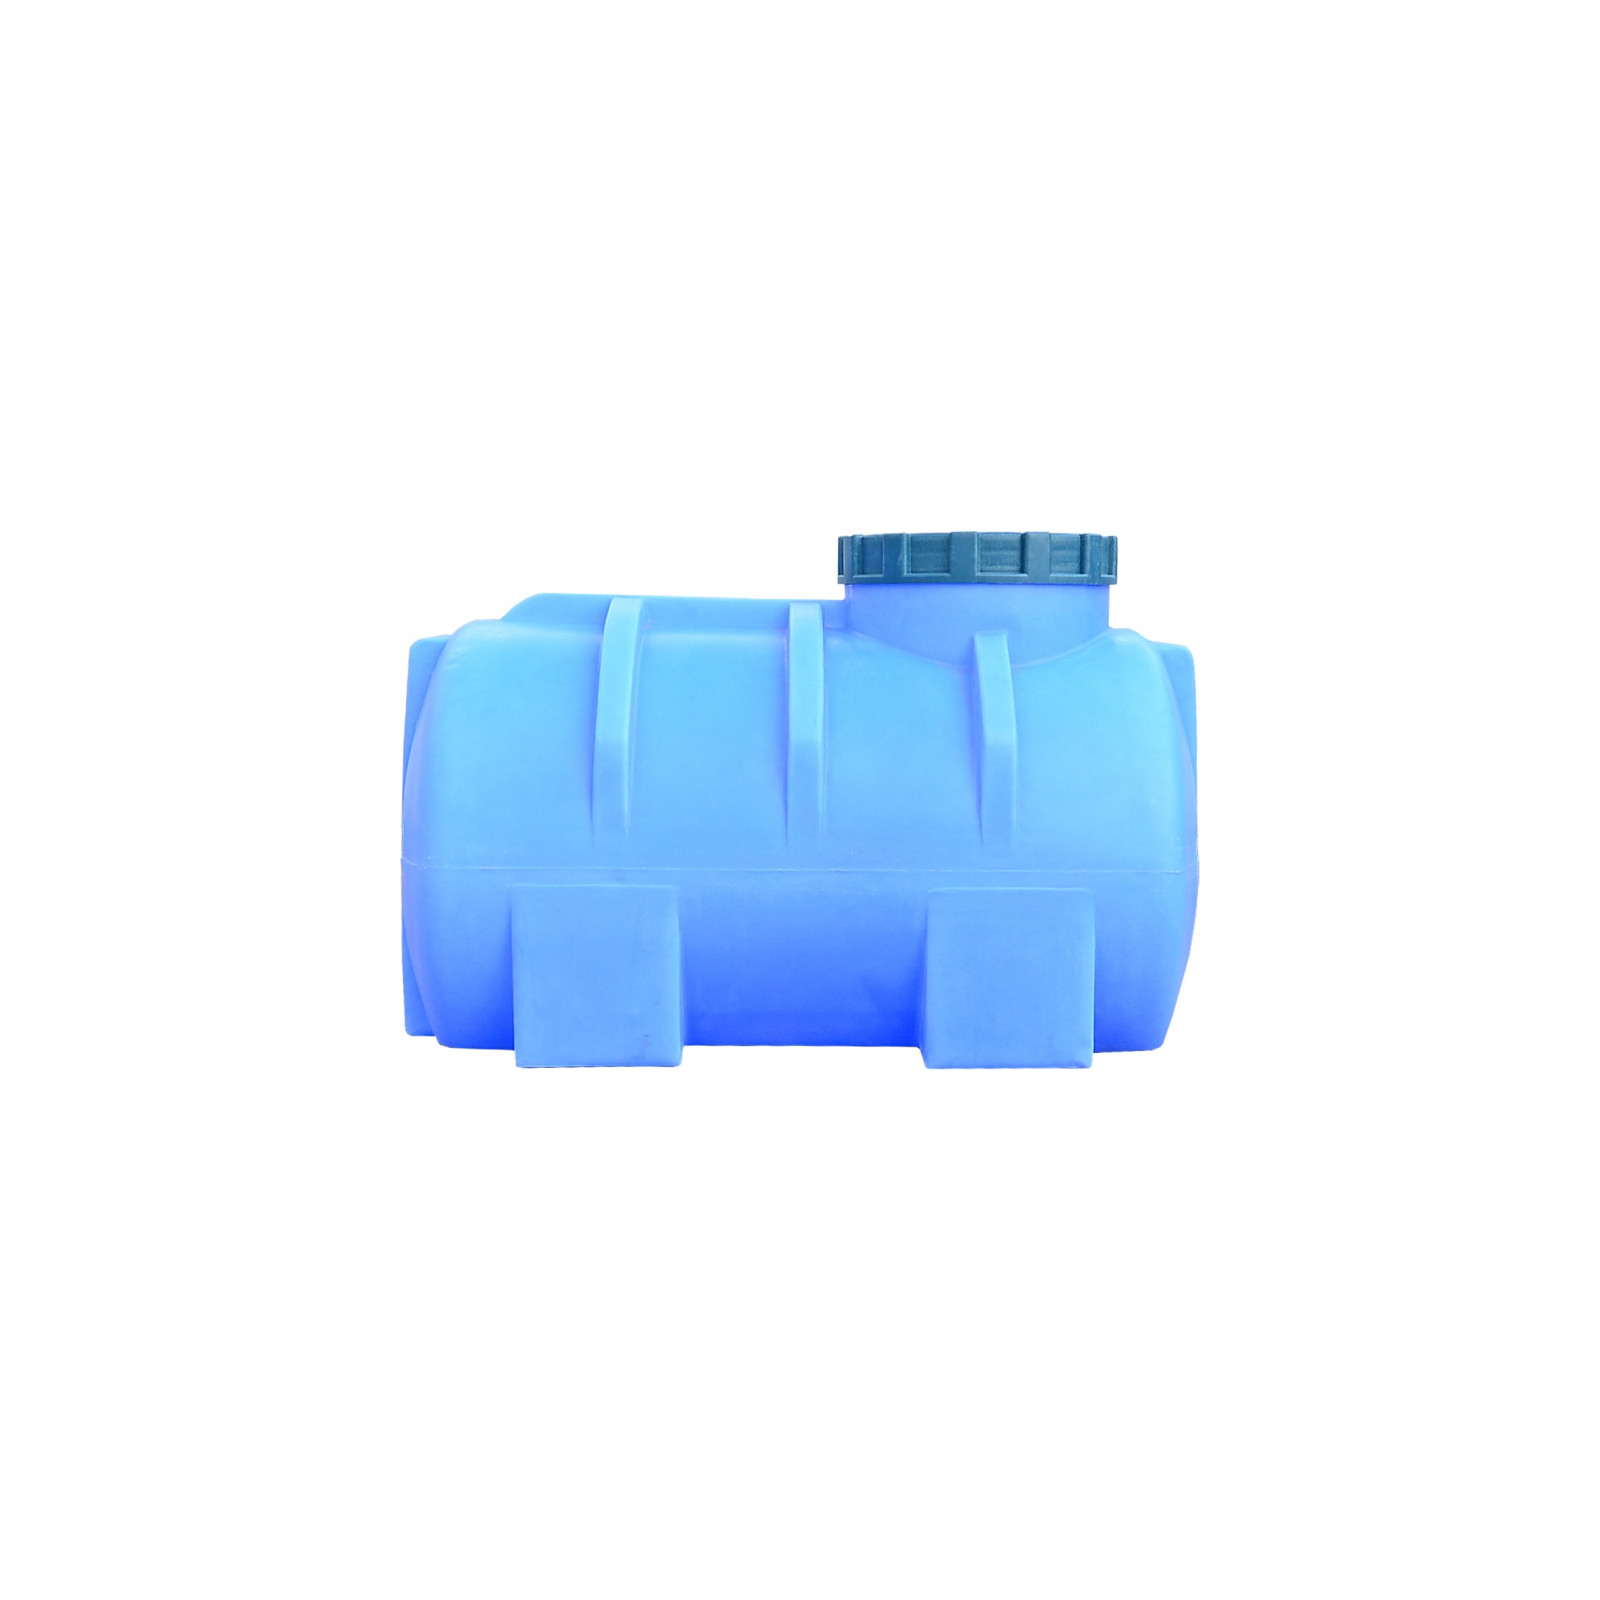 Емкость для воды Пласт Бак горизонтальная пищевая 250 л синяя (12463) изображение 3